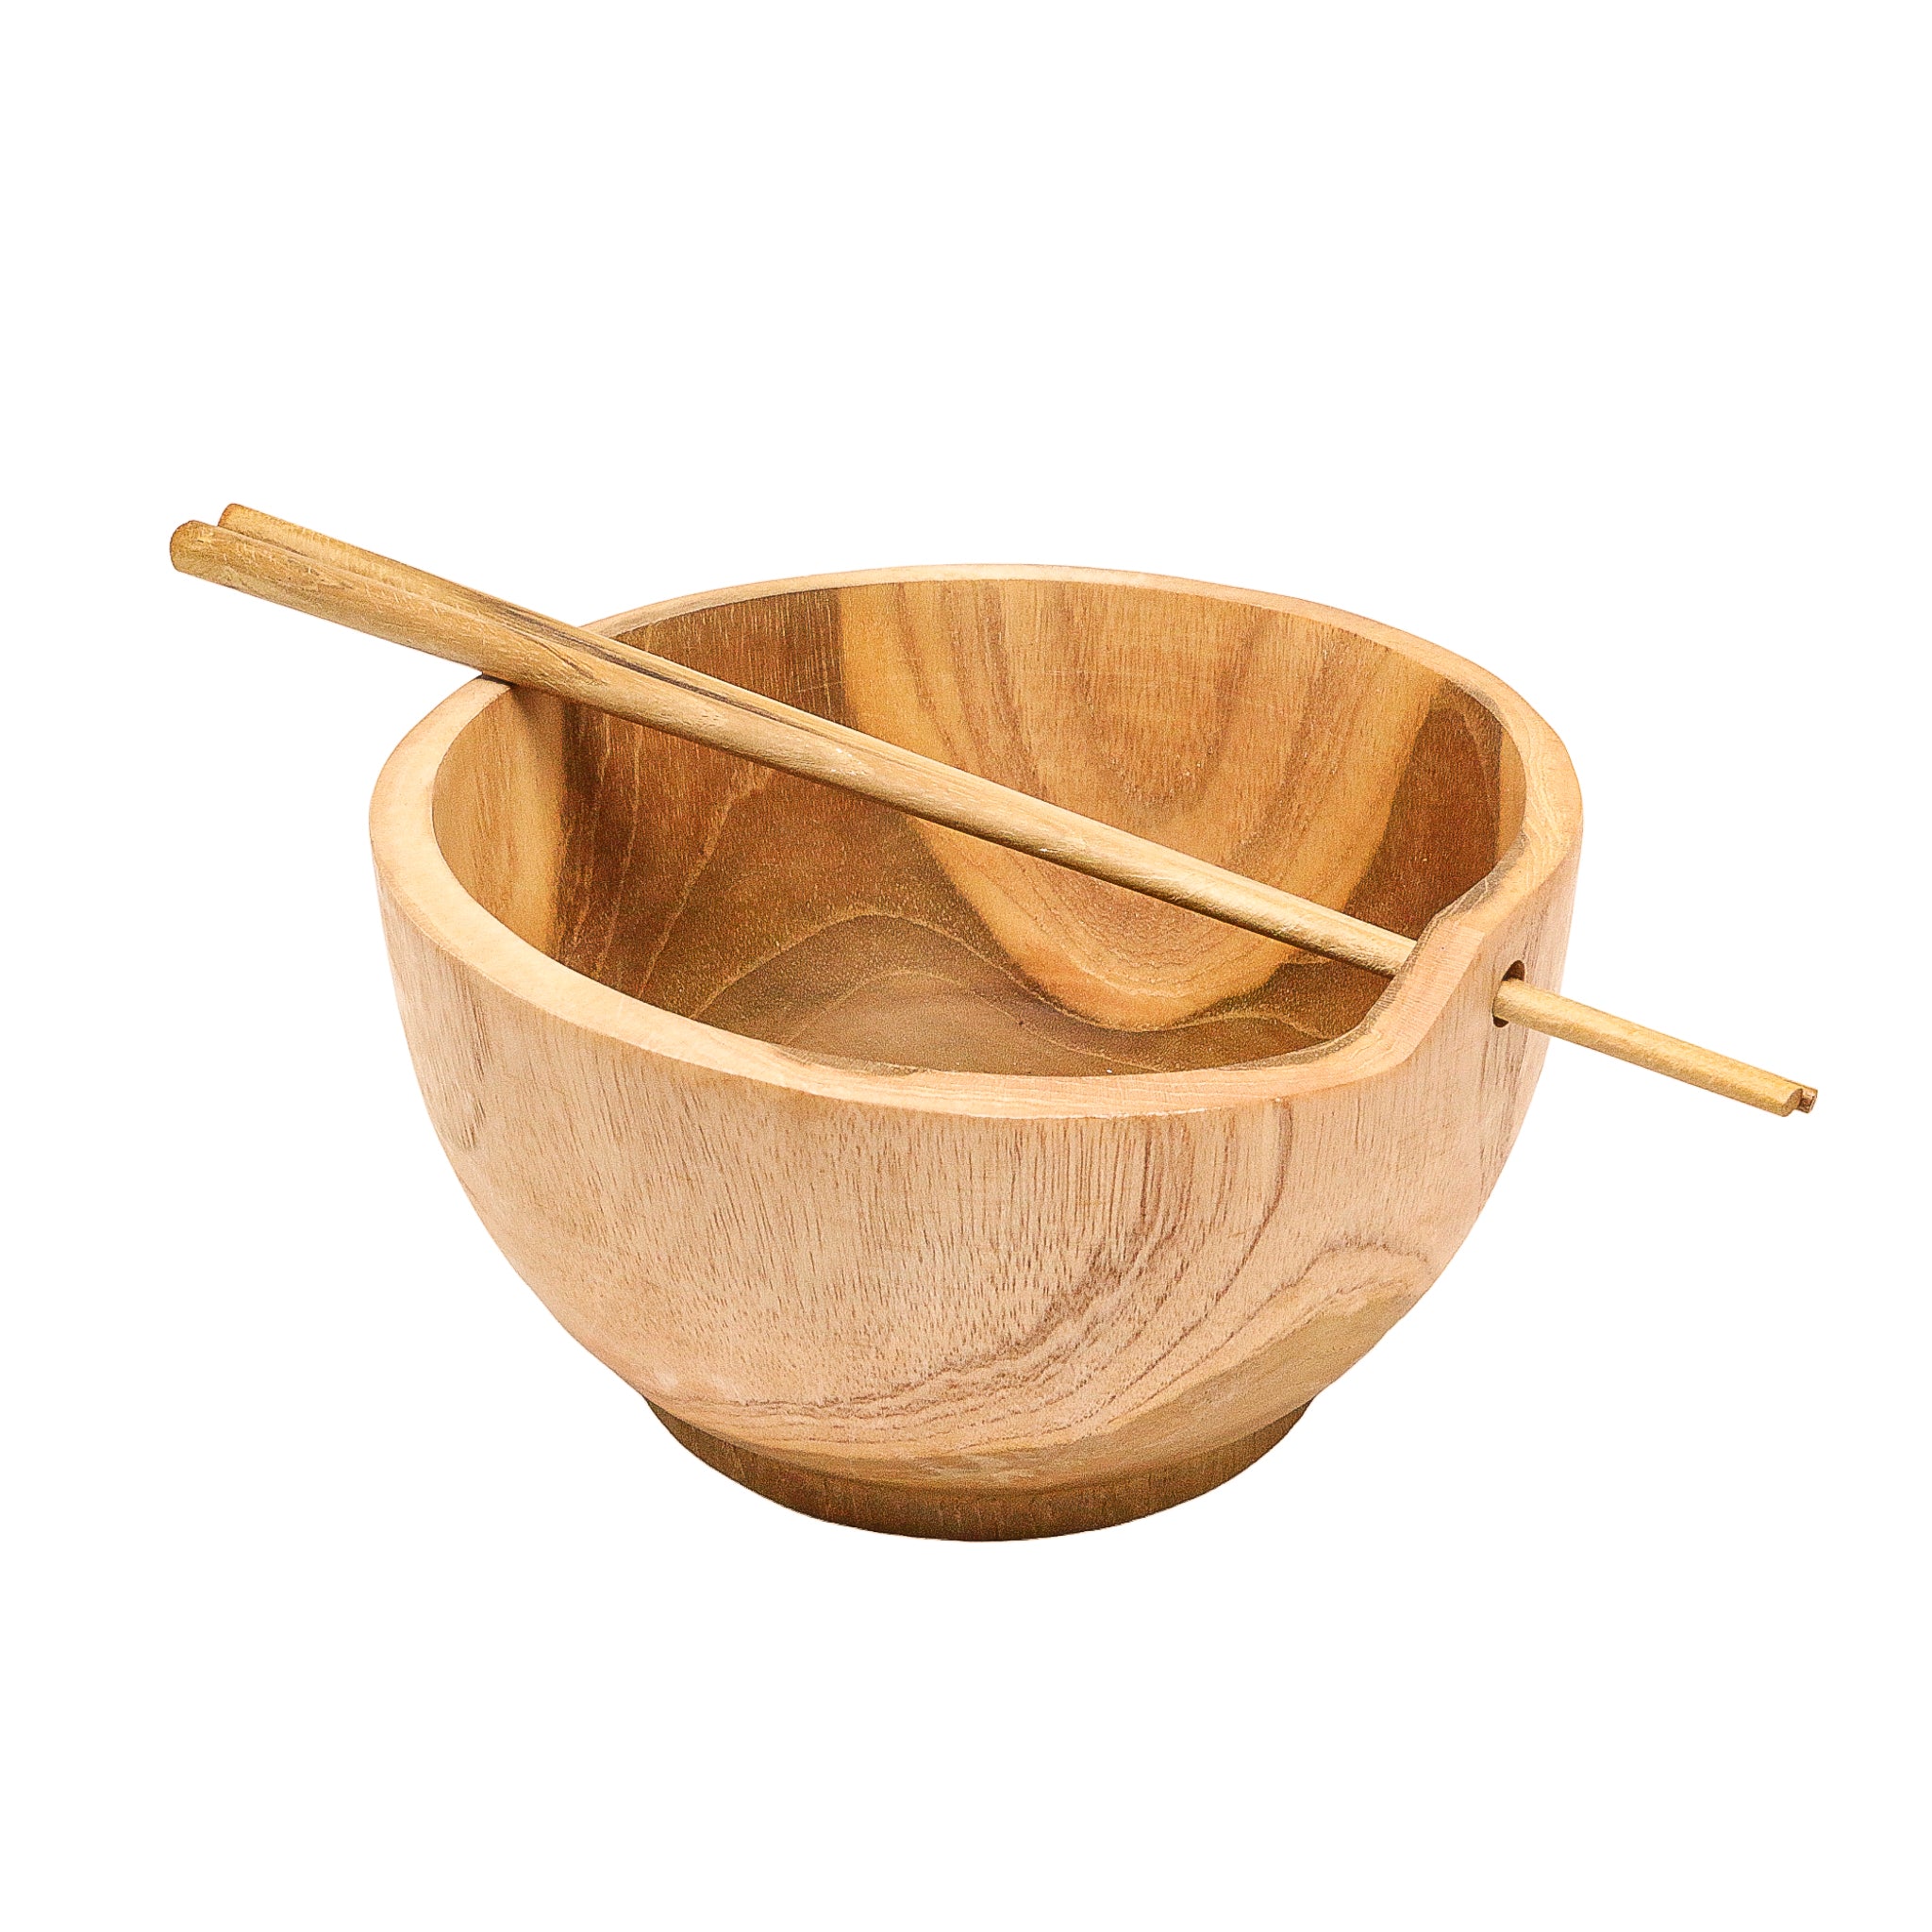 Teak Ramen Bowl with Chopsticks